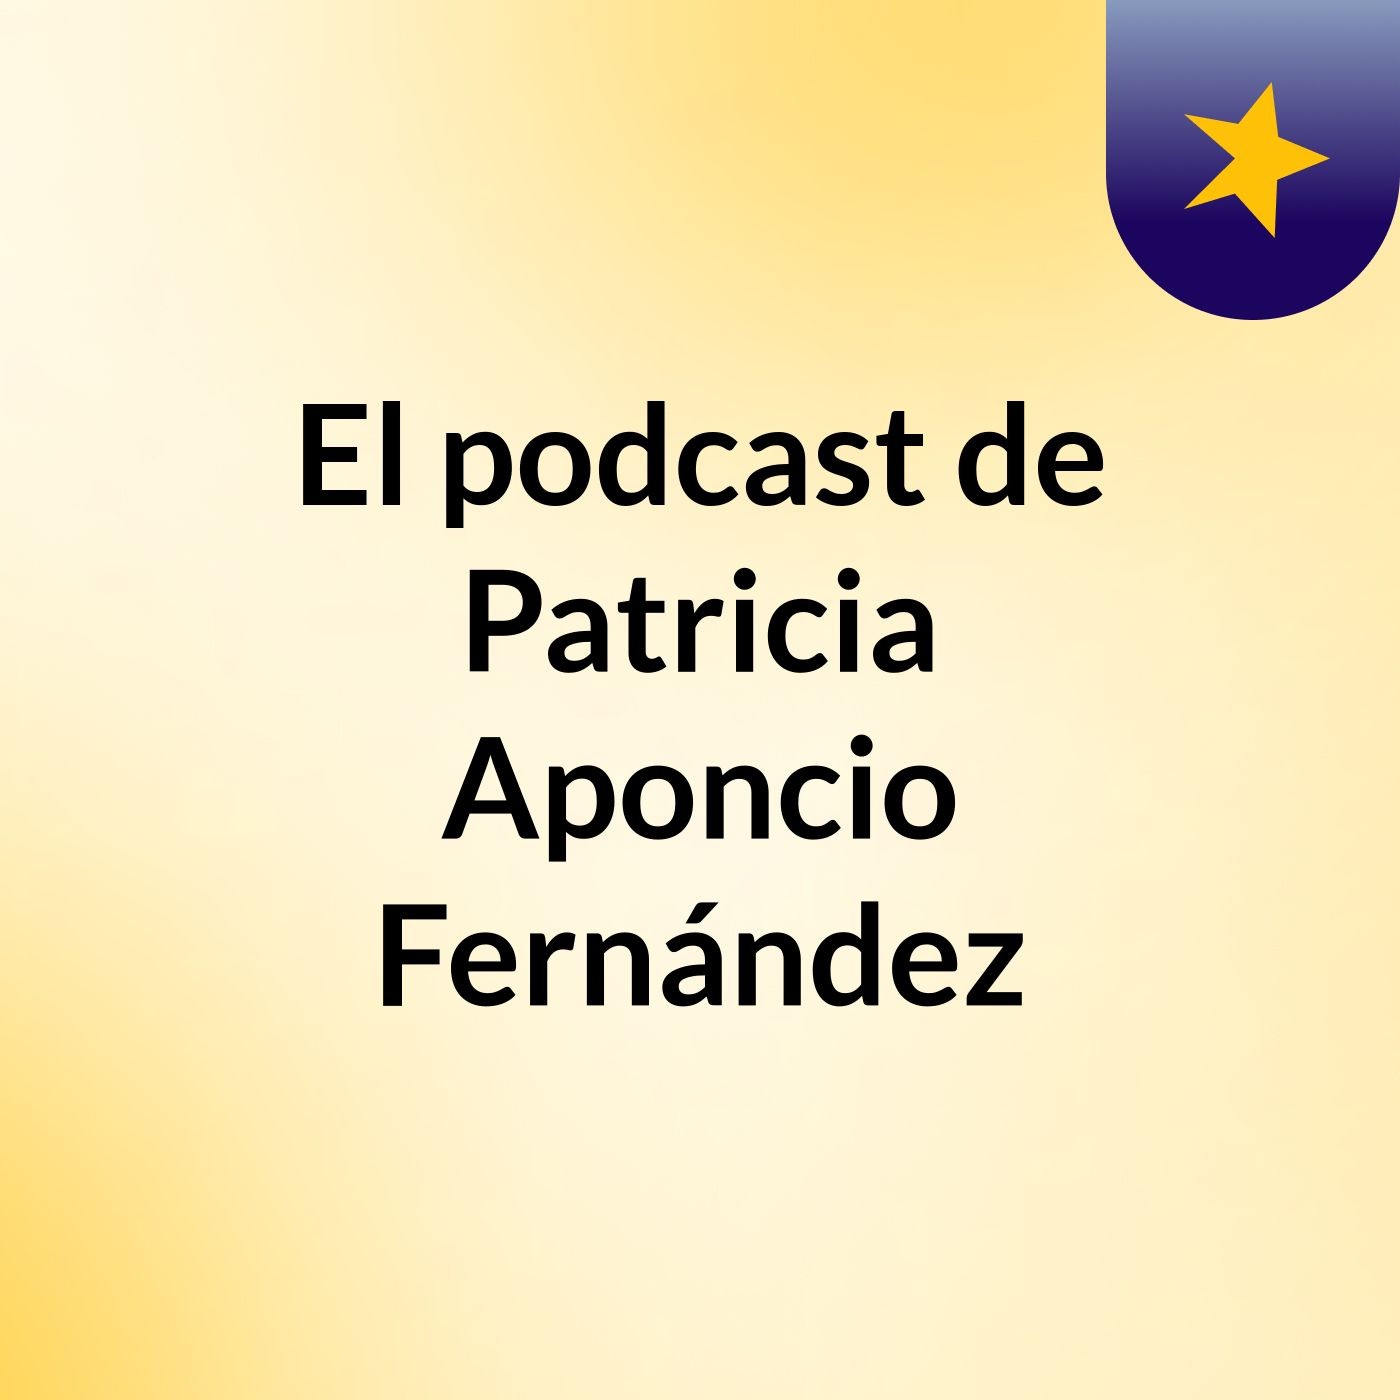 El podcast de Patricia Aponcio Fernández